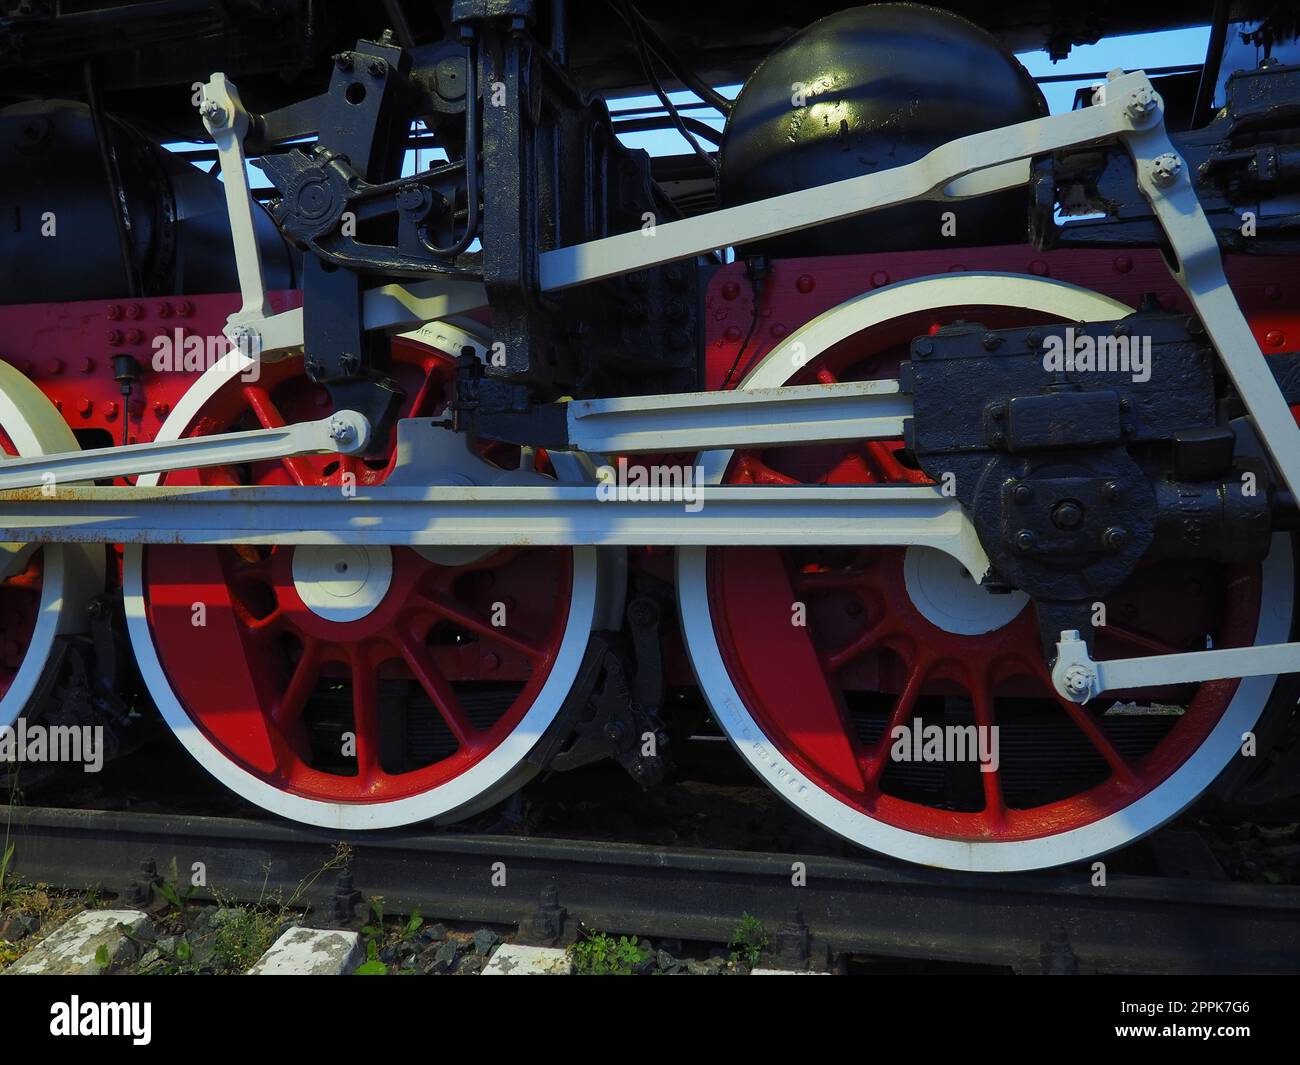 Roues rétro vintage d'une locomotive ou d'un train en gros plan. Grandes roues rouges en métal lourd avec mécanismes de guidage de piston. Locomotive des 19e - 20e siècles avec une machine à vapeur. Banque D'Images